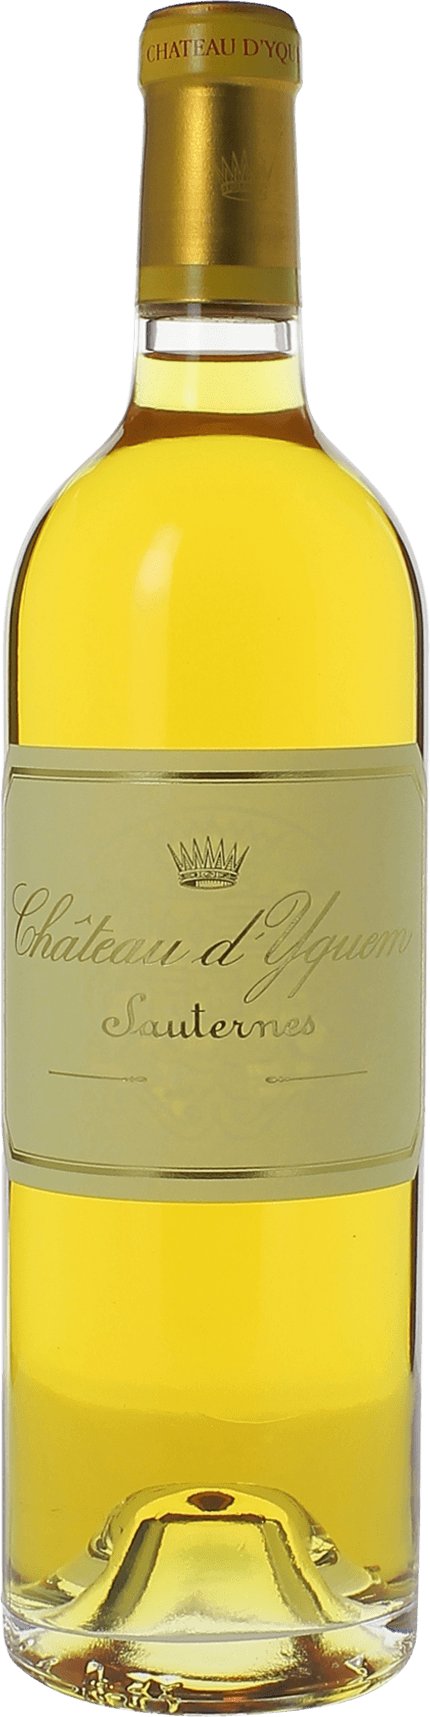 Yquem ( disponible en dcembre 2018) 2016 1er Grand cru class Sauternes, Bordeaux blanc